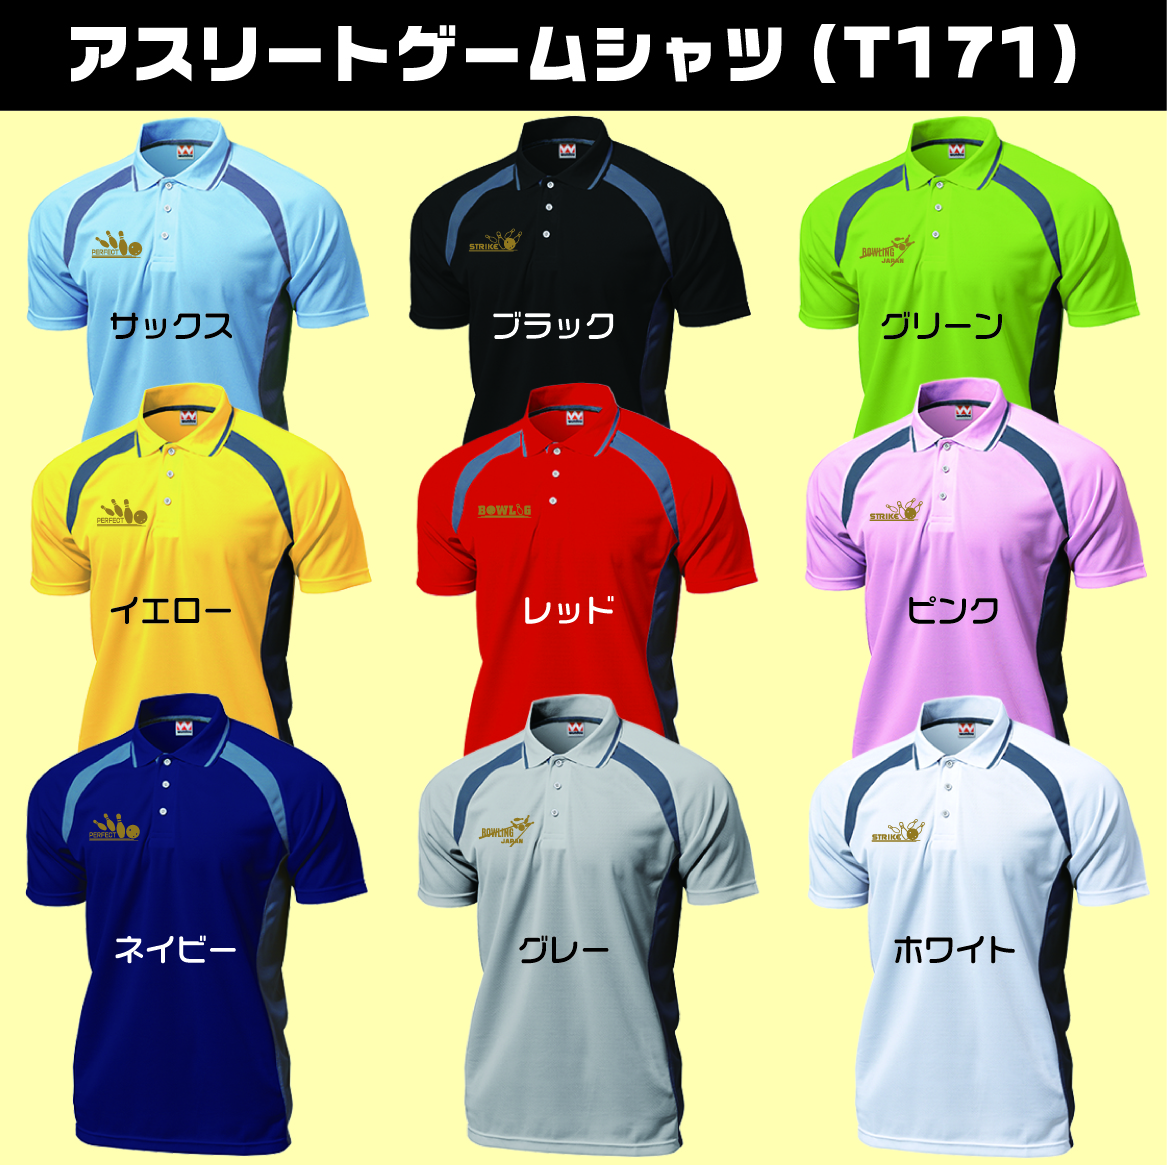 アスリートゲームシャツT-171(名入れ１行無料)、ボウリングワンポイントデザイン入り、スポーツの為のポロシャツ、全９色-4デザイン、送料無料画像